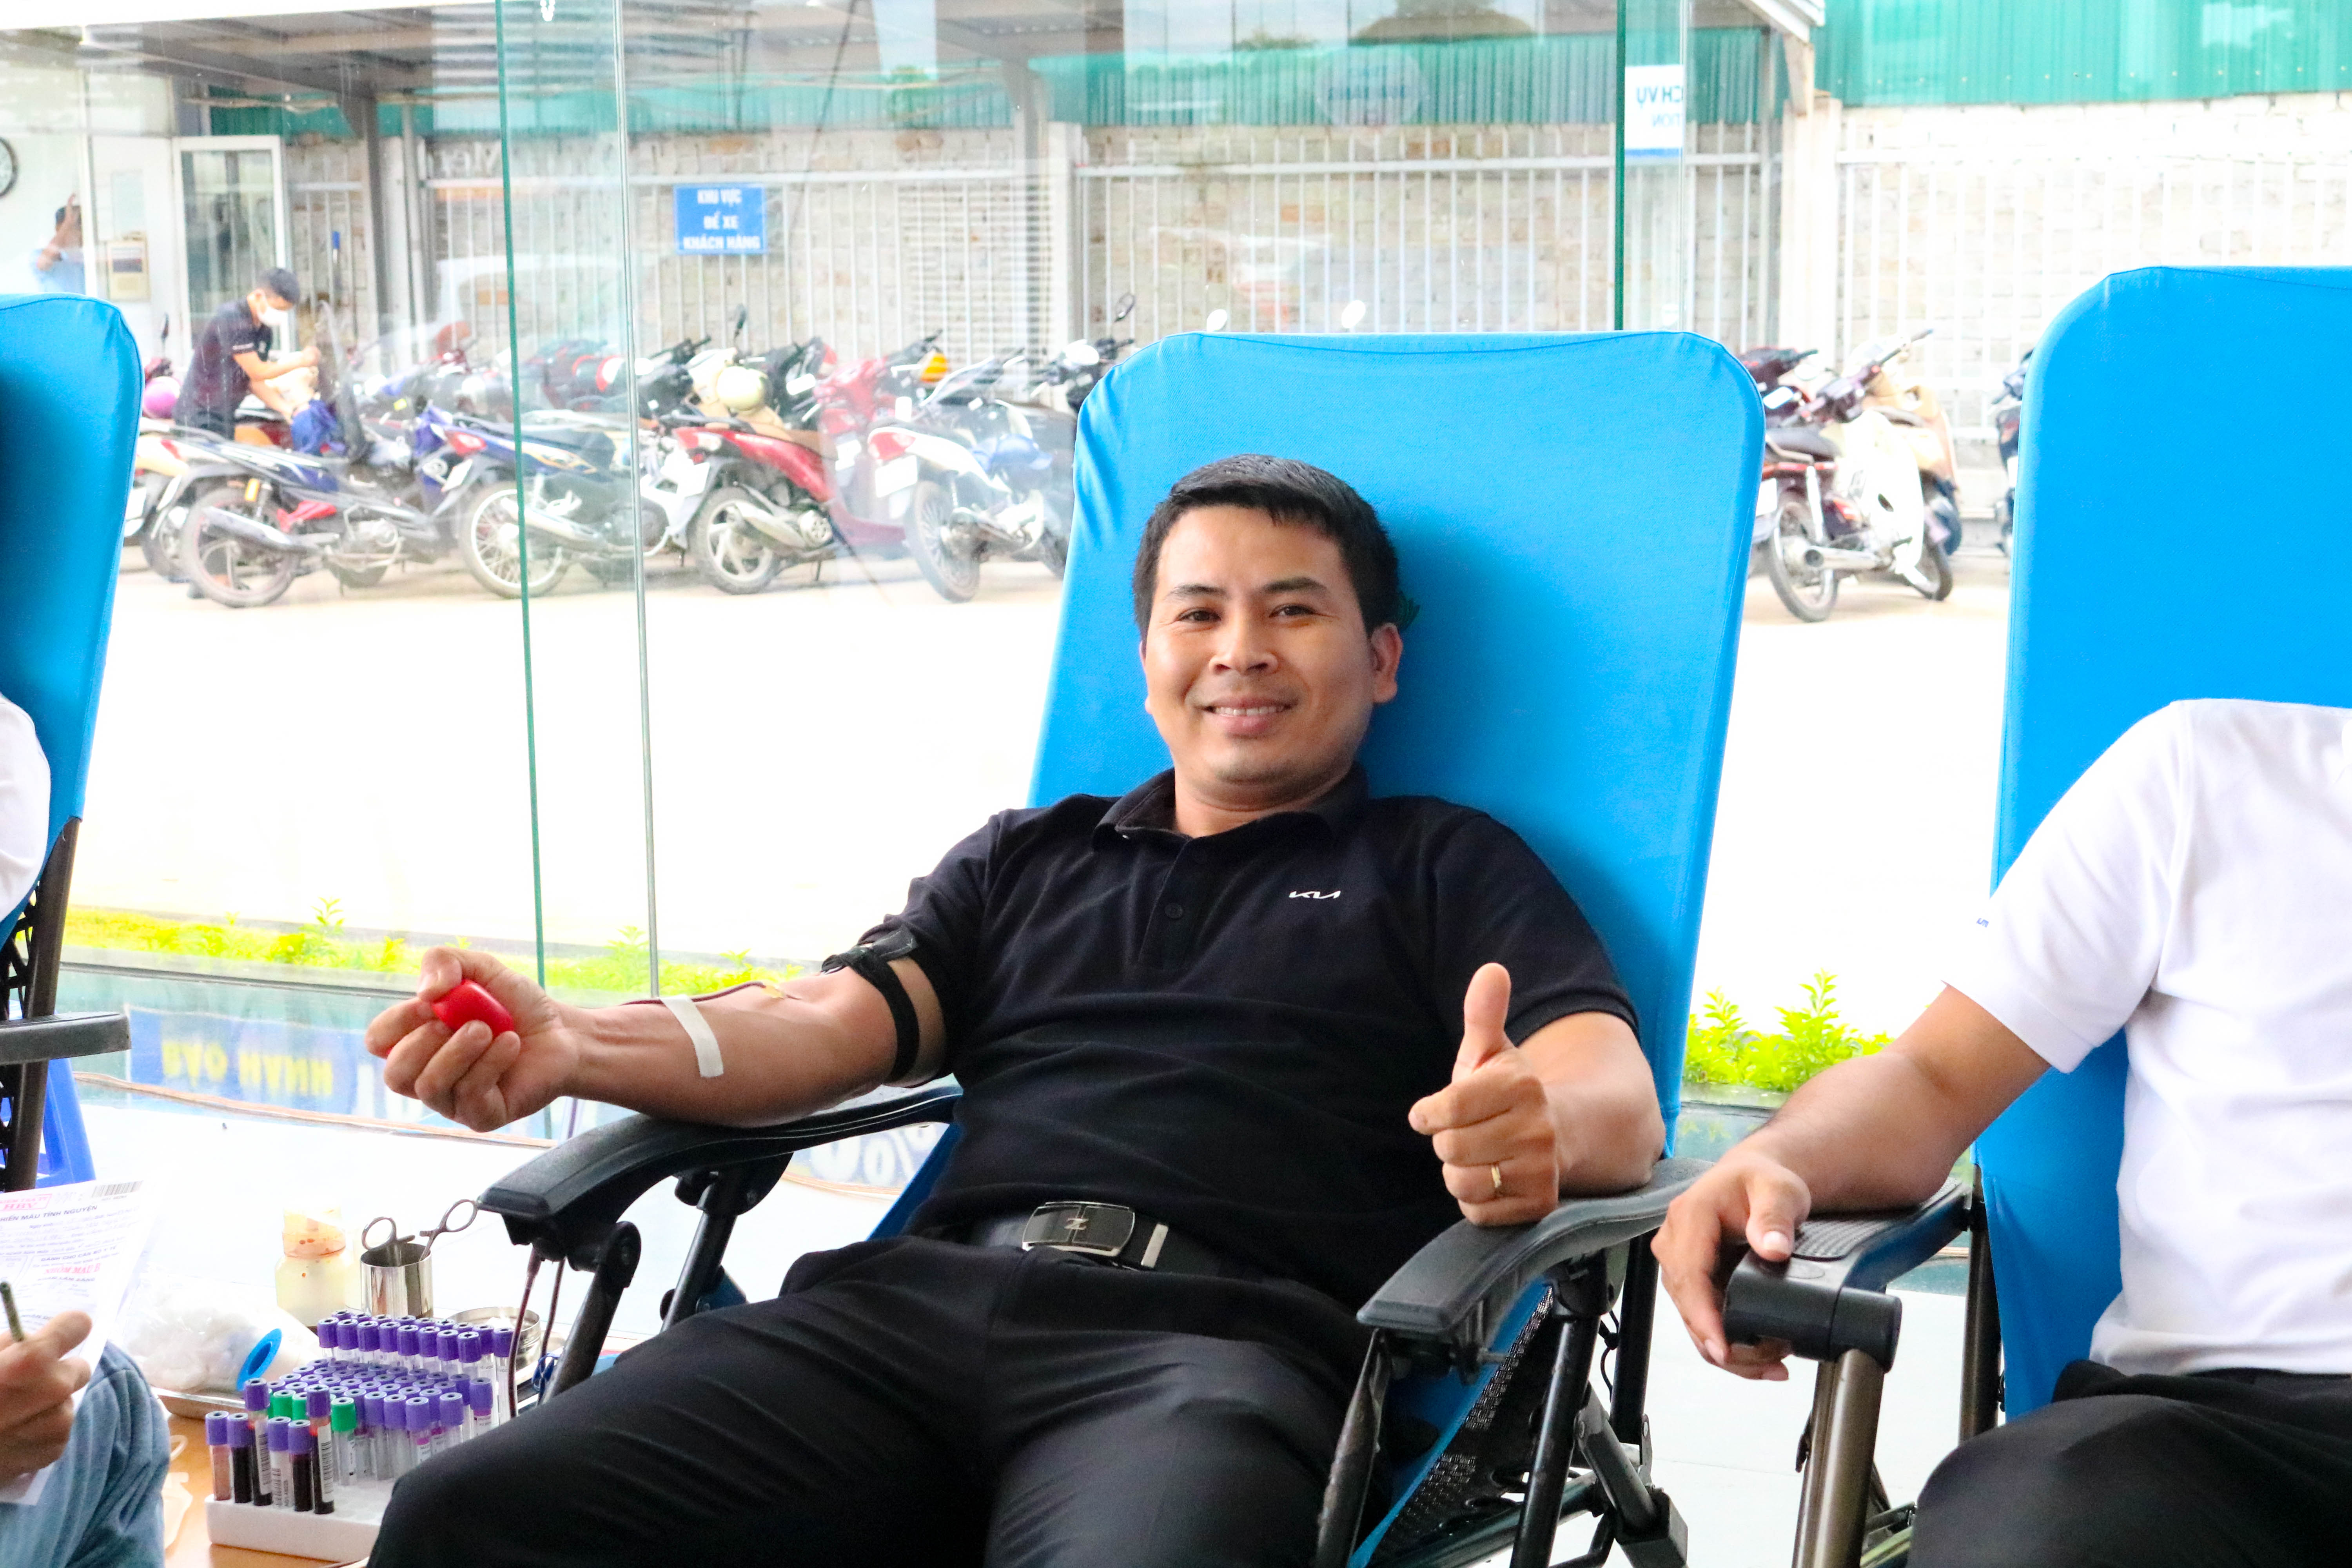 THACO AUTO Nghệ An tổ chức chương trình Hiến máu tình nguyện năm 2022